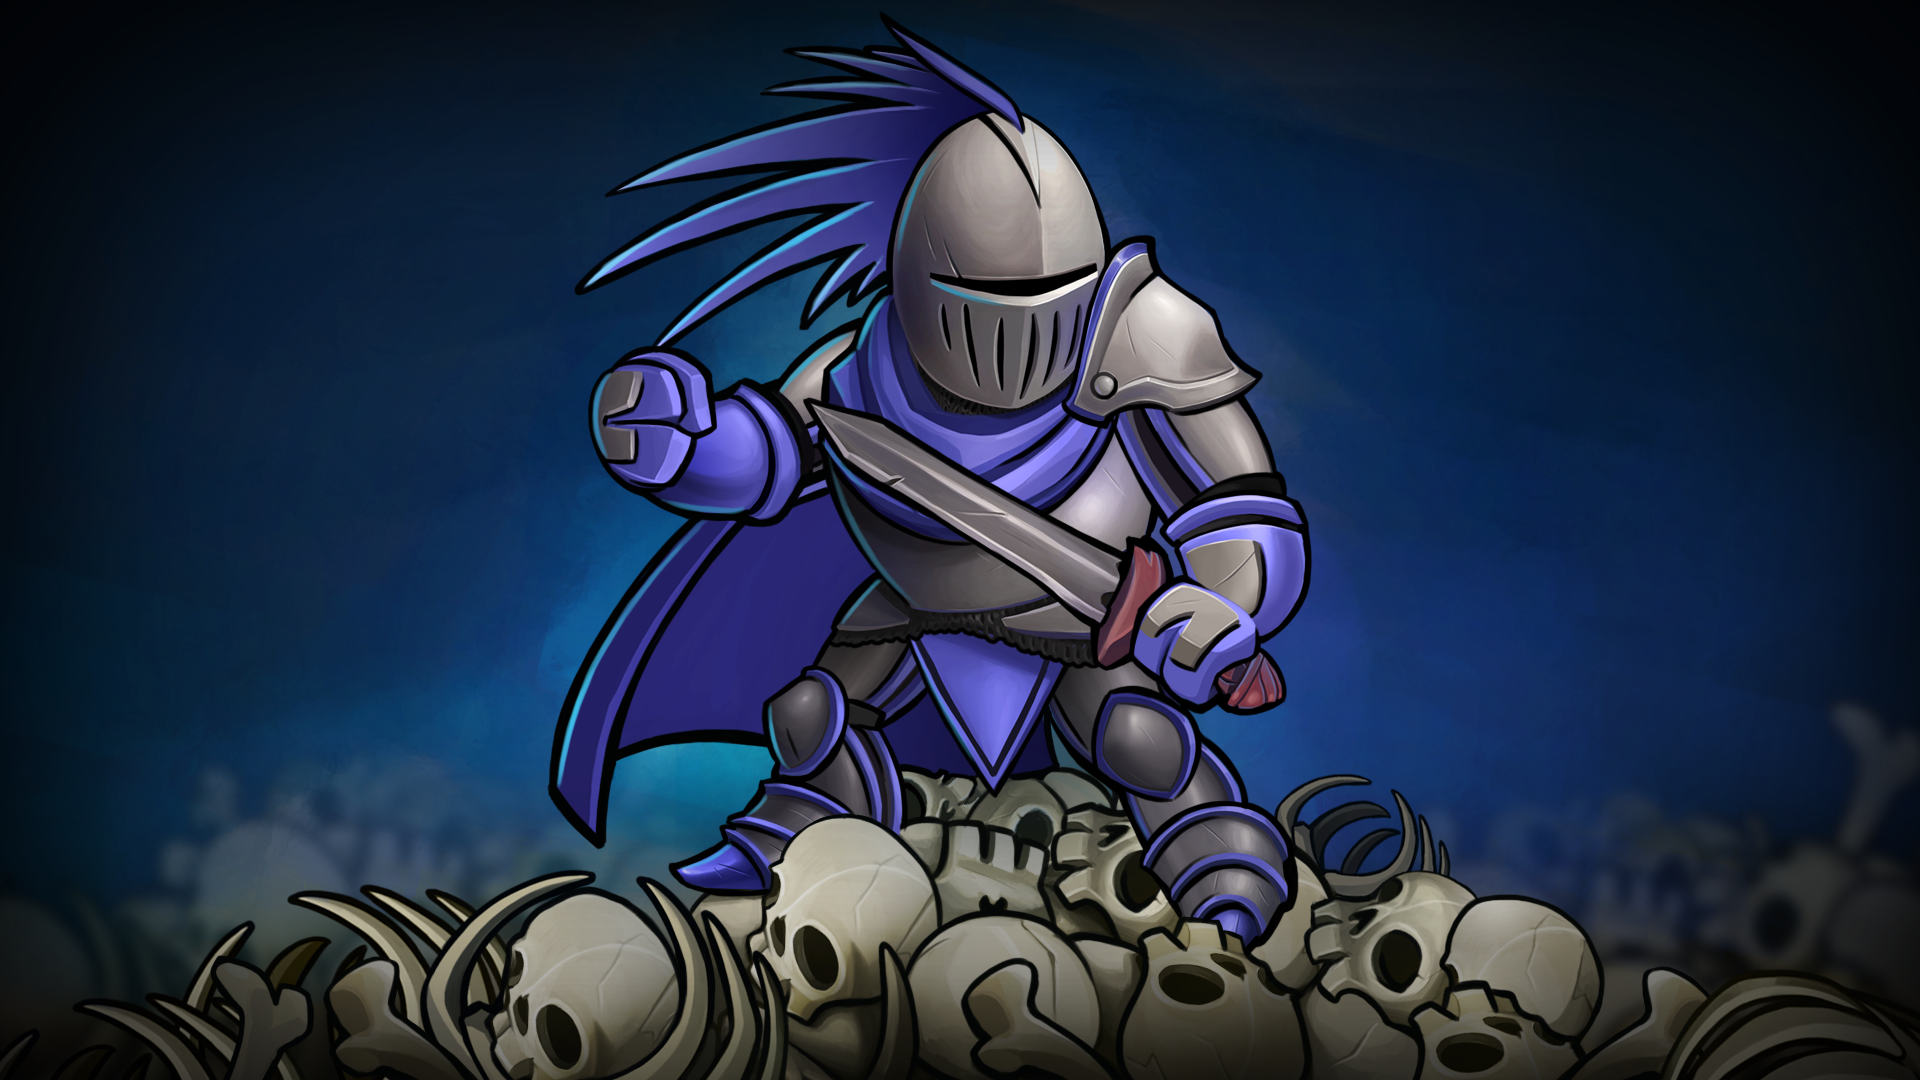 Icon for Grim Reaper